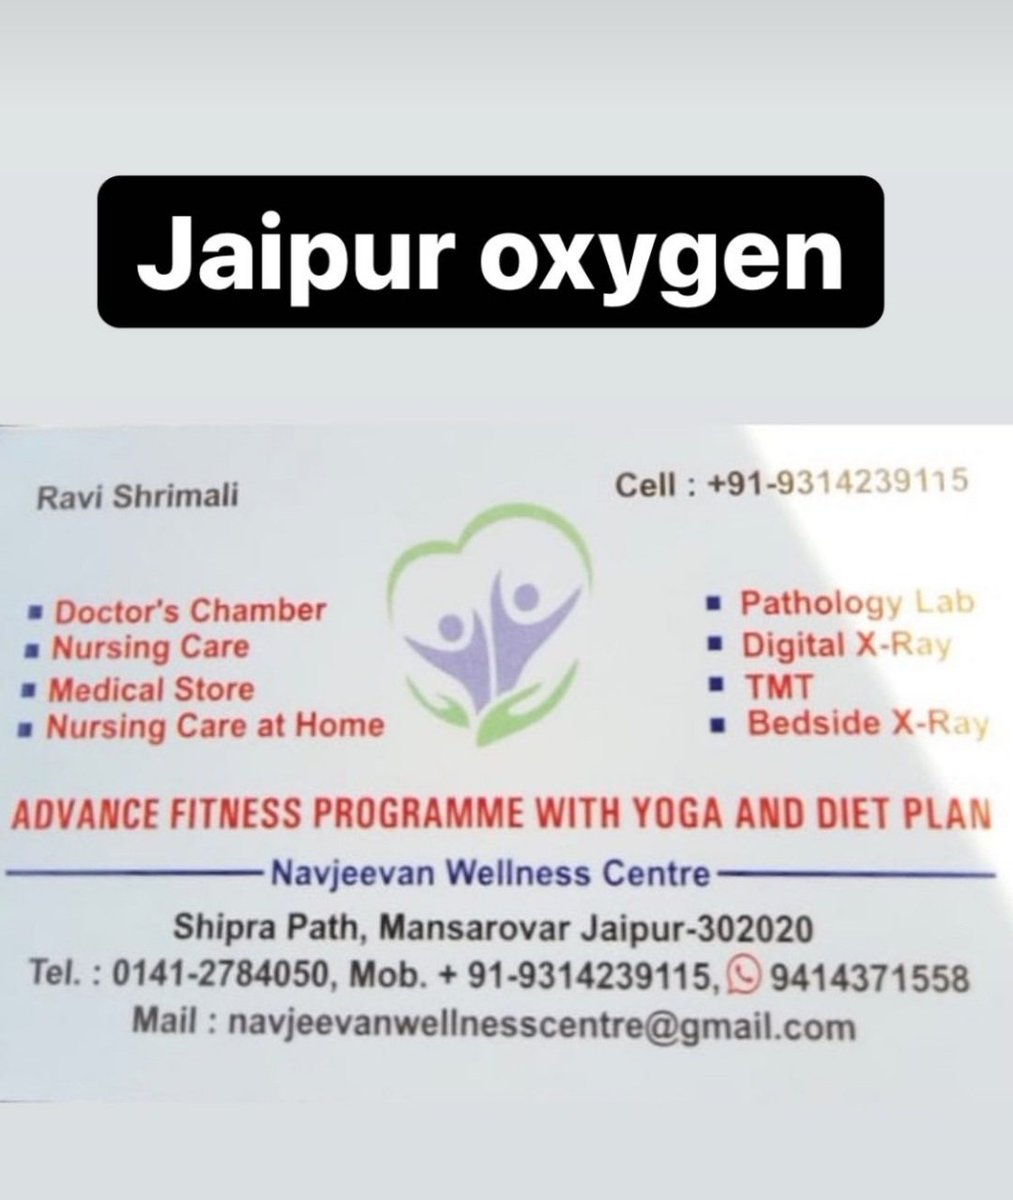 Delhi Badarpur....Oxygen supplier....